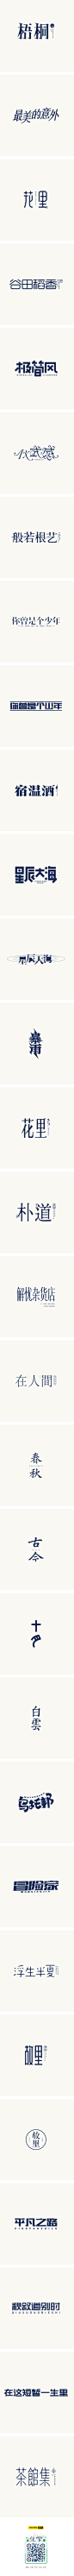 北故|字体设计整理（1）-字体传奇网-中国首个字体品牌设计师交流网